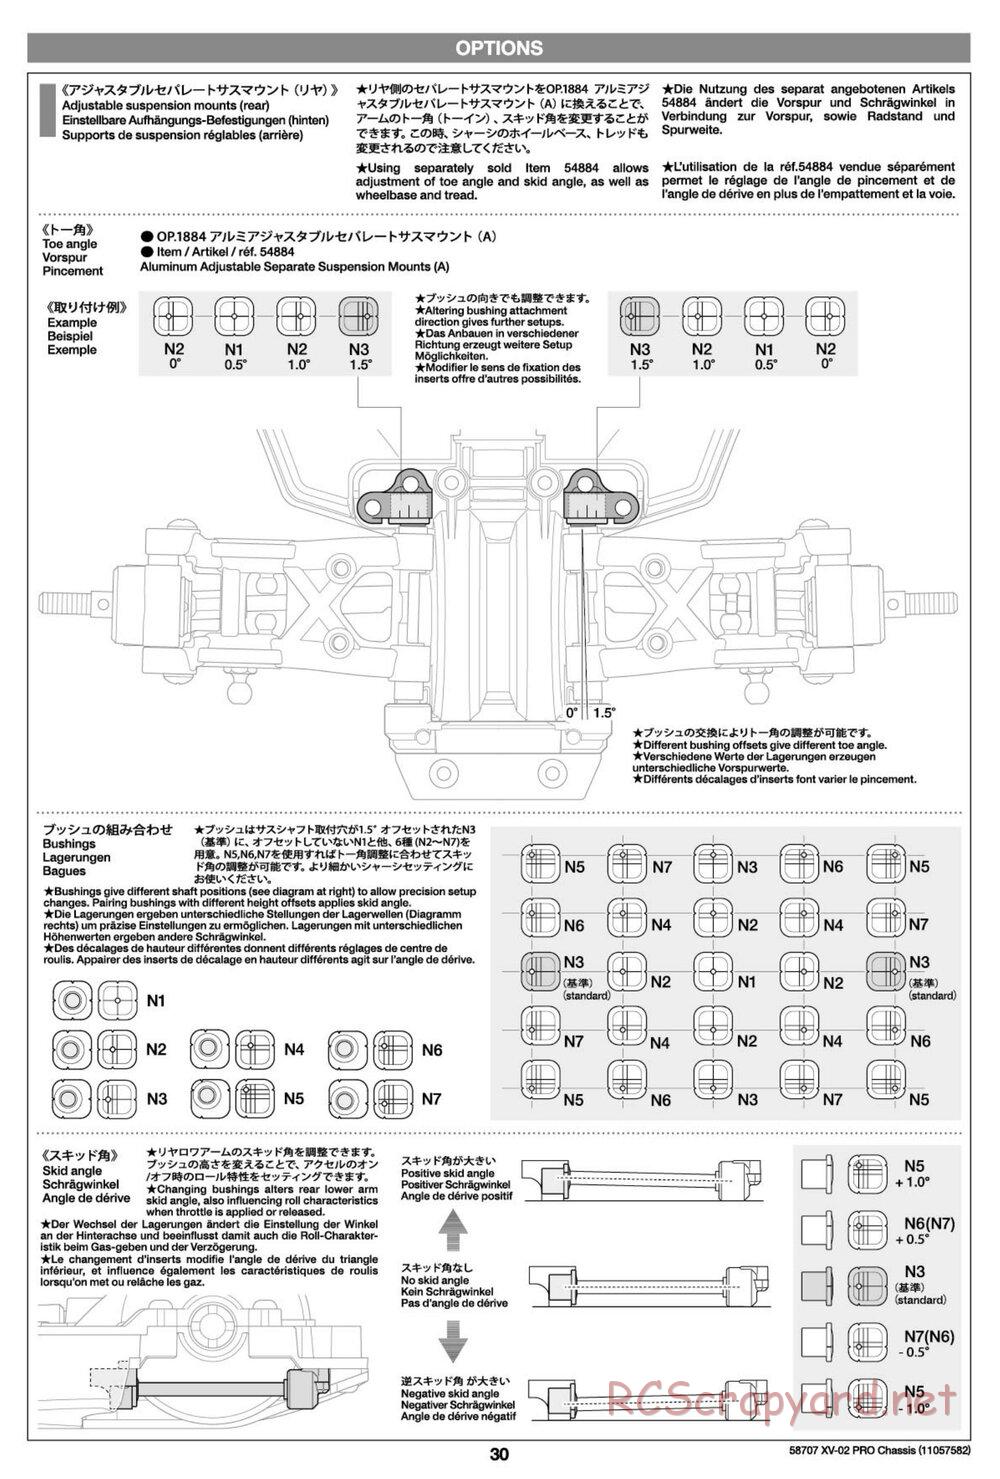 Tamiya - XV-02 Pro Chassis - Manual - Page 30